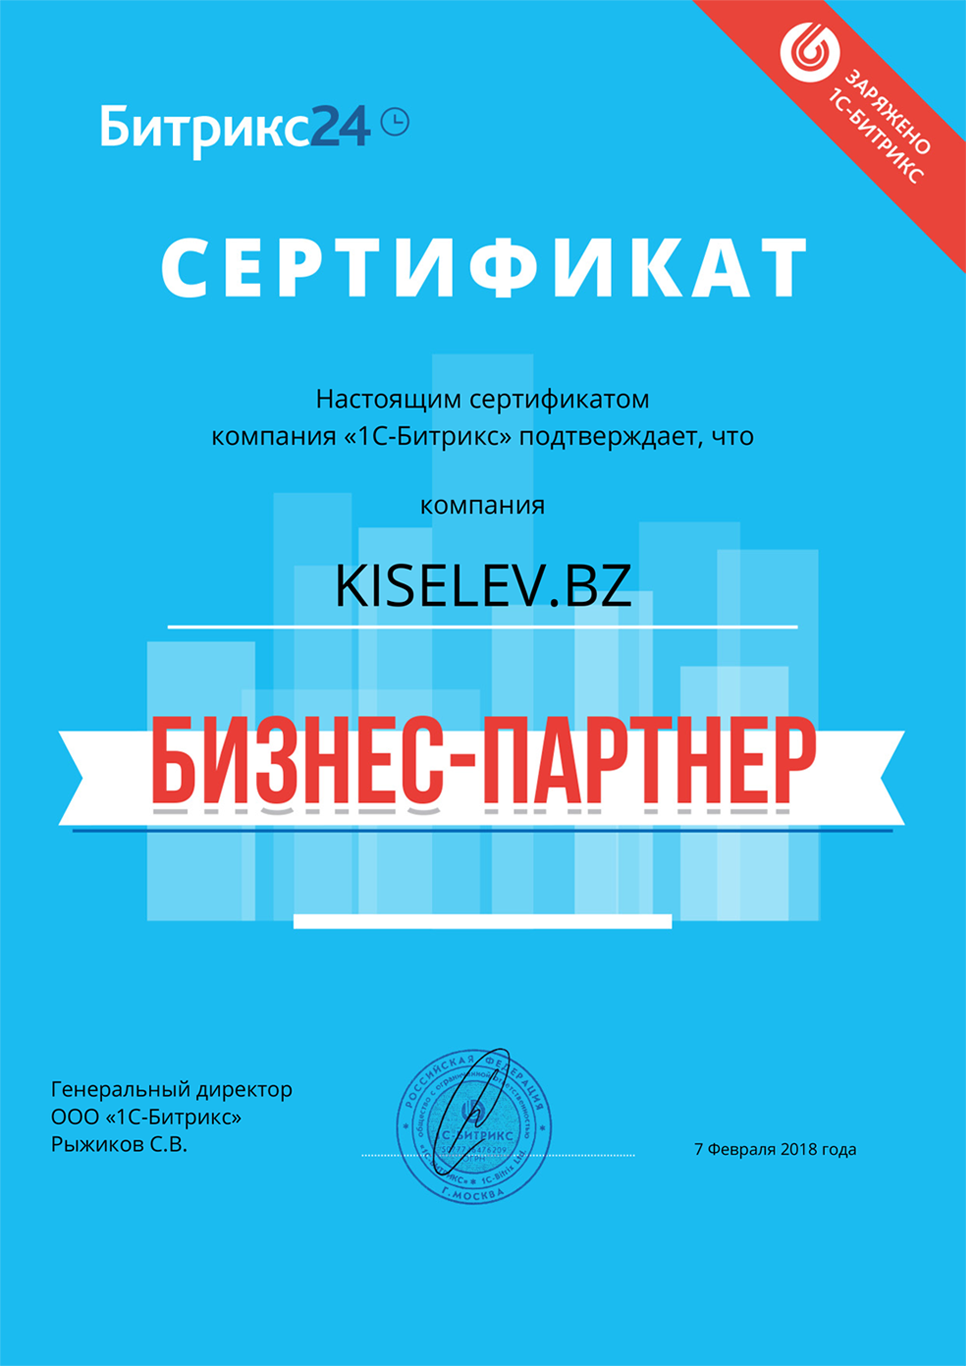 Сертификат партнёра по АМОСРМ по России